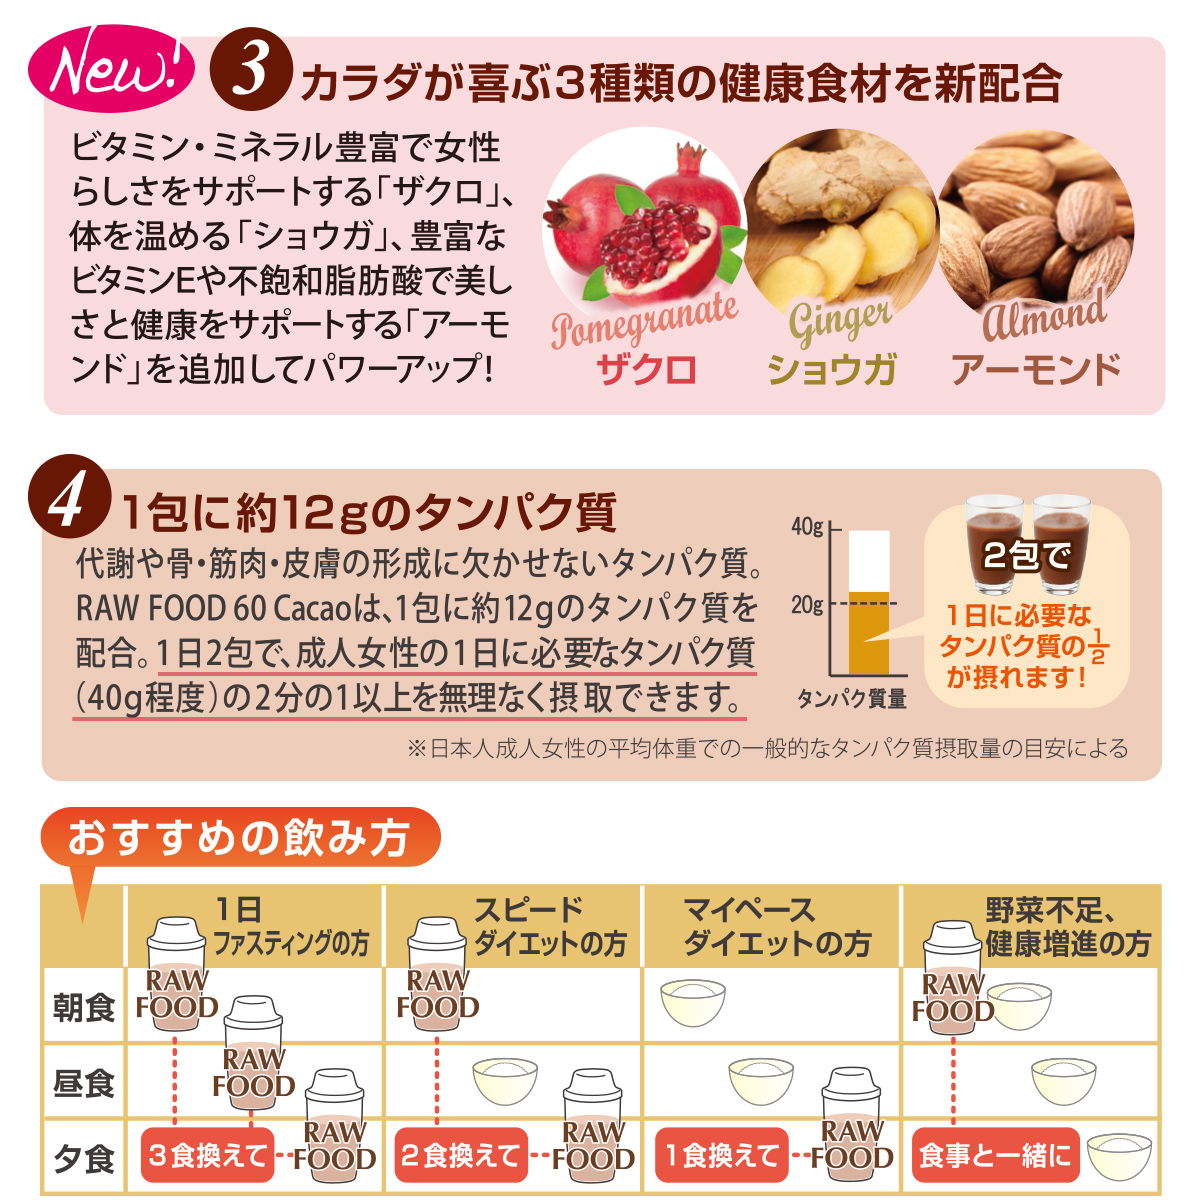 【リニューアル発売記念】BE-MAX RAW FOOD 60 Cacao １箱ご購入で３包プレゼント